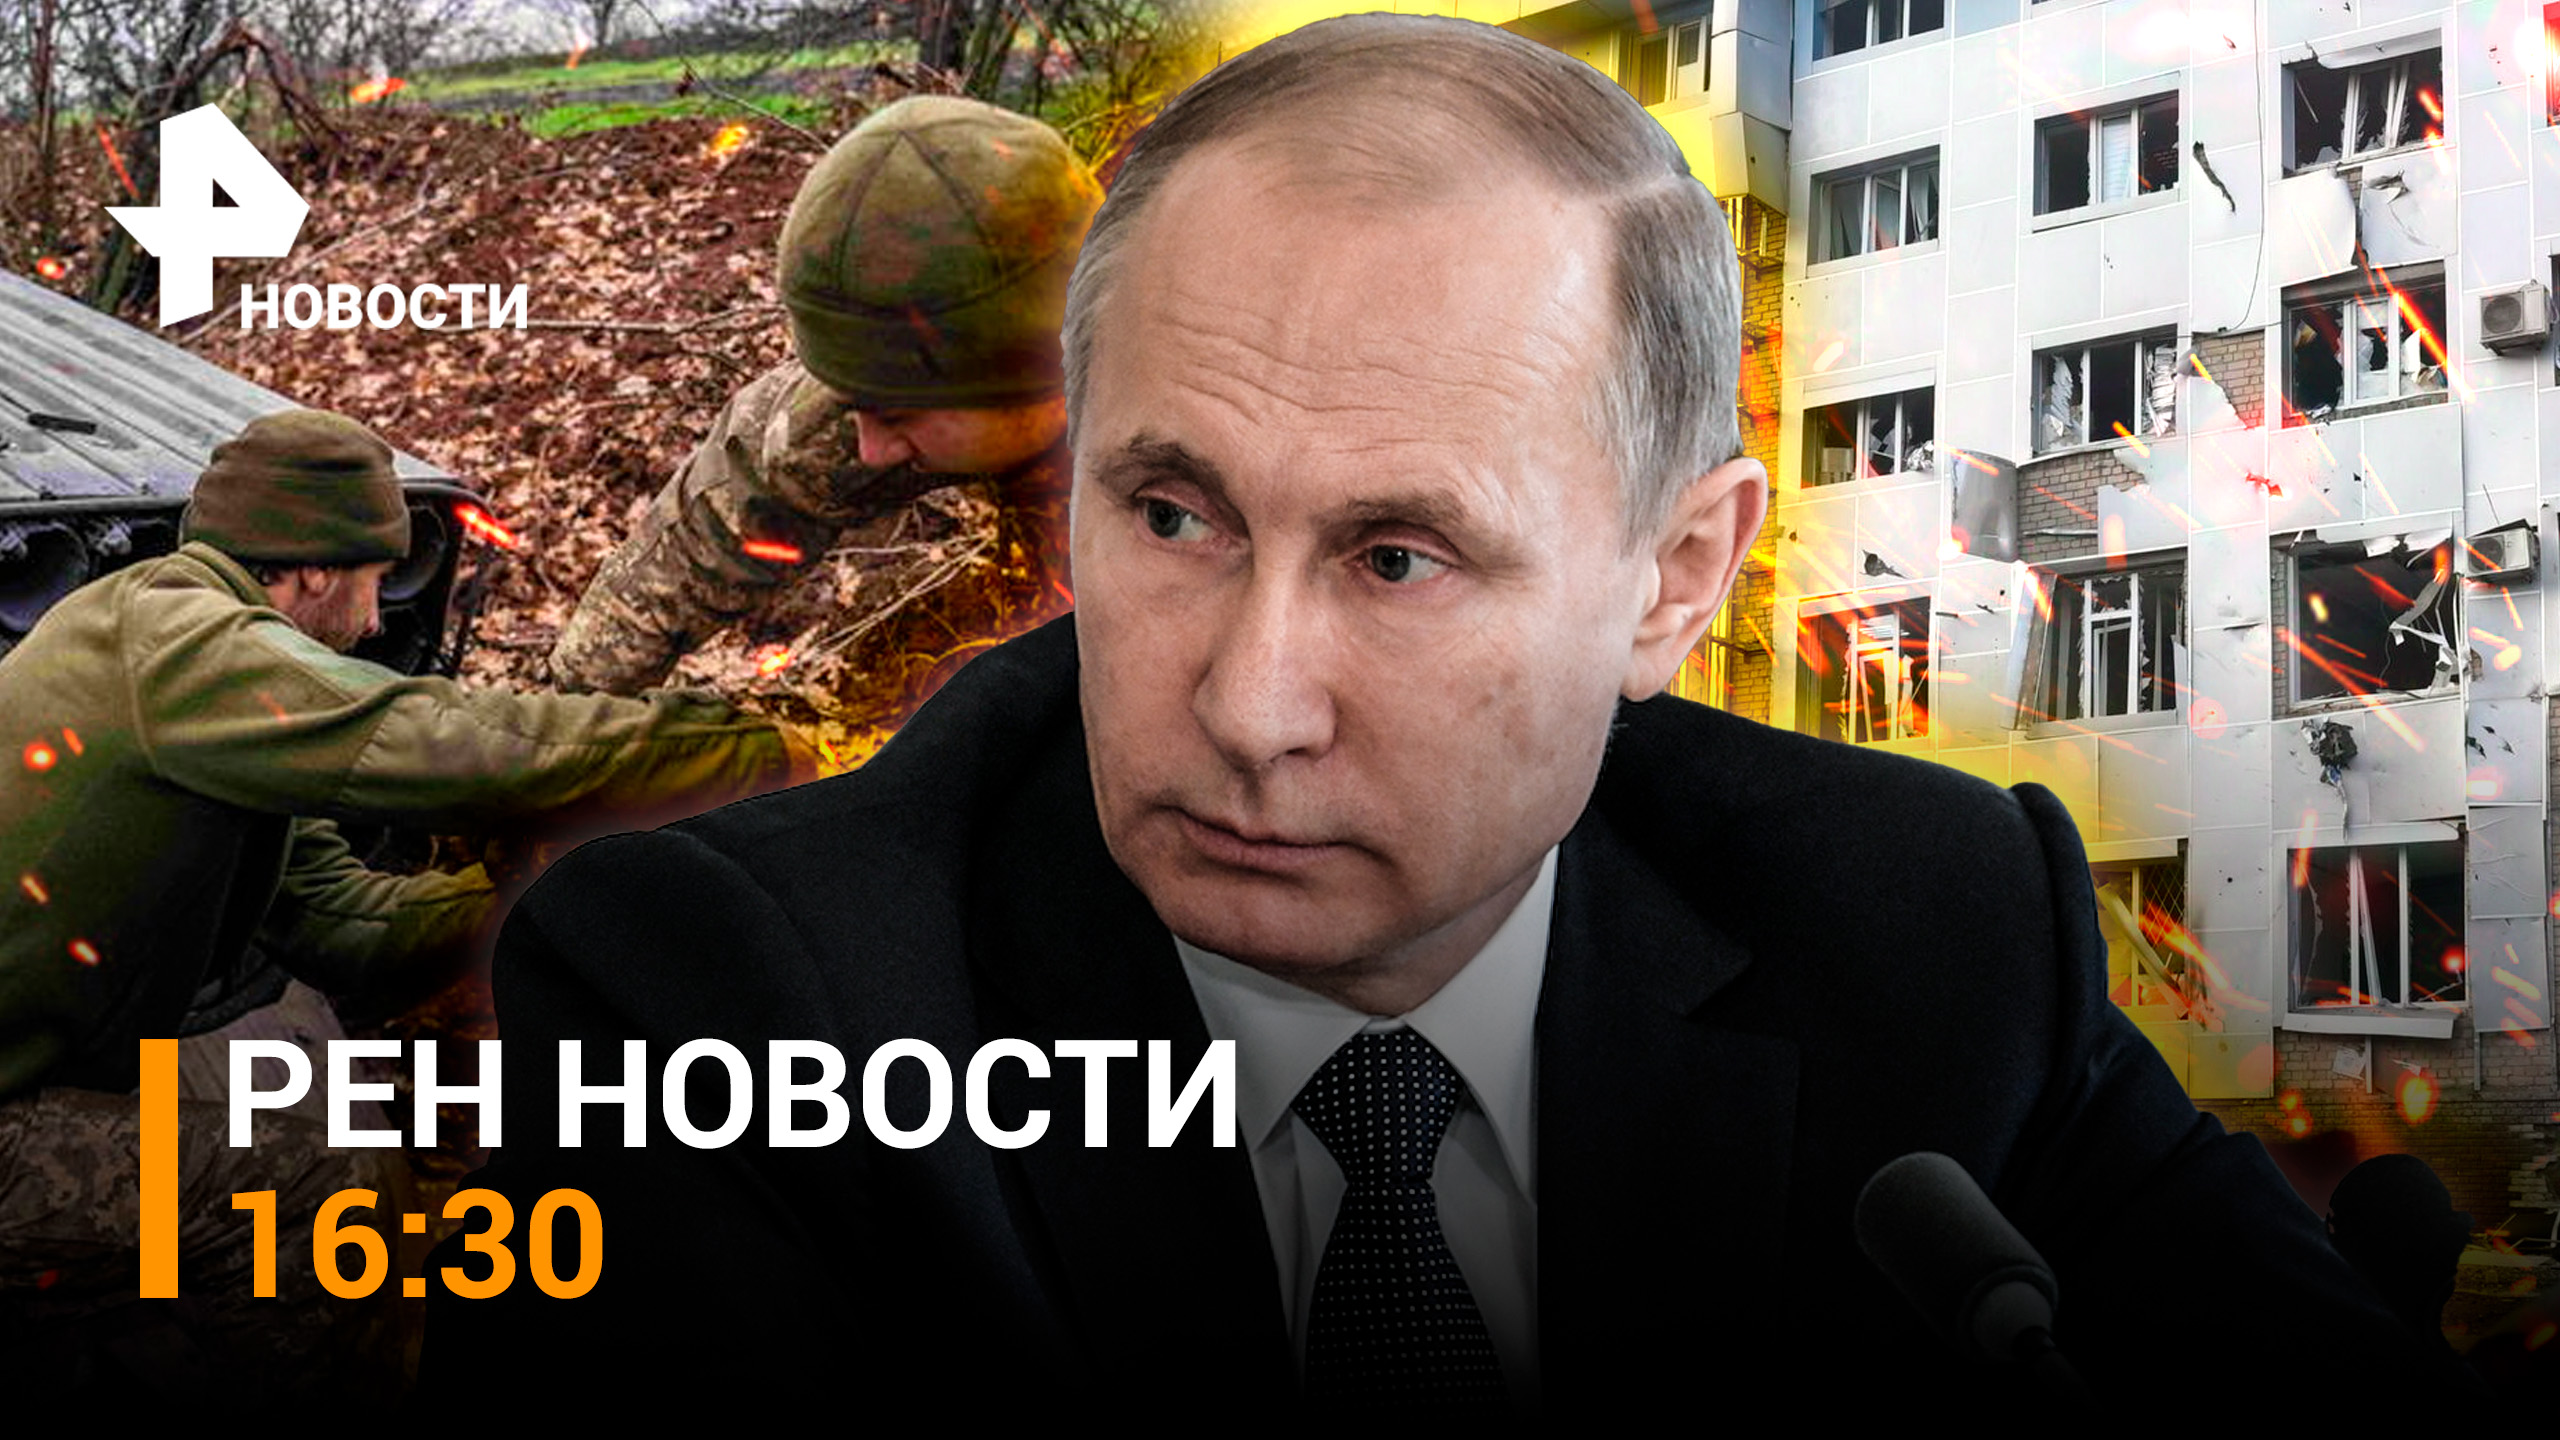 Огромная воронка в Кемеровской области. Теракт в Мелитополе / РЕН НОВОСТИ 12.05, 16:30